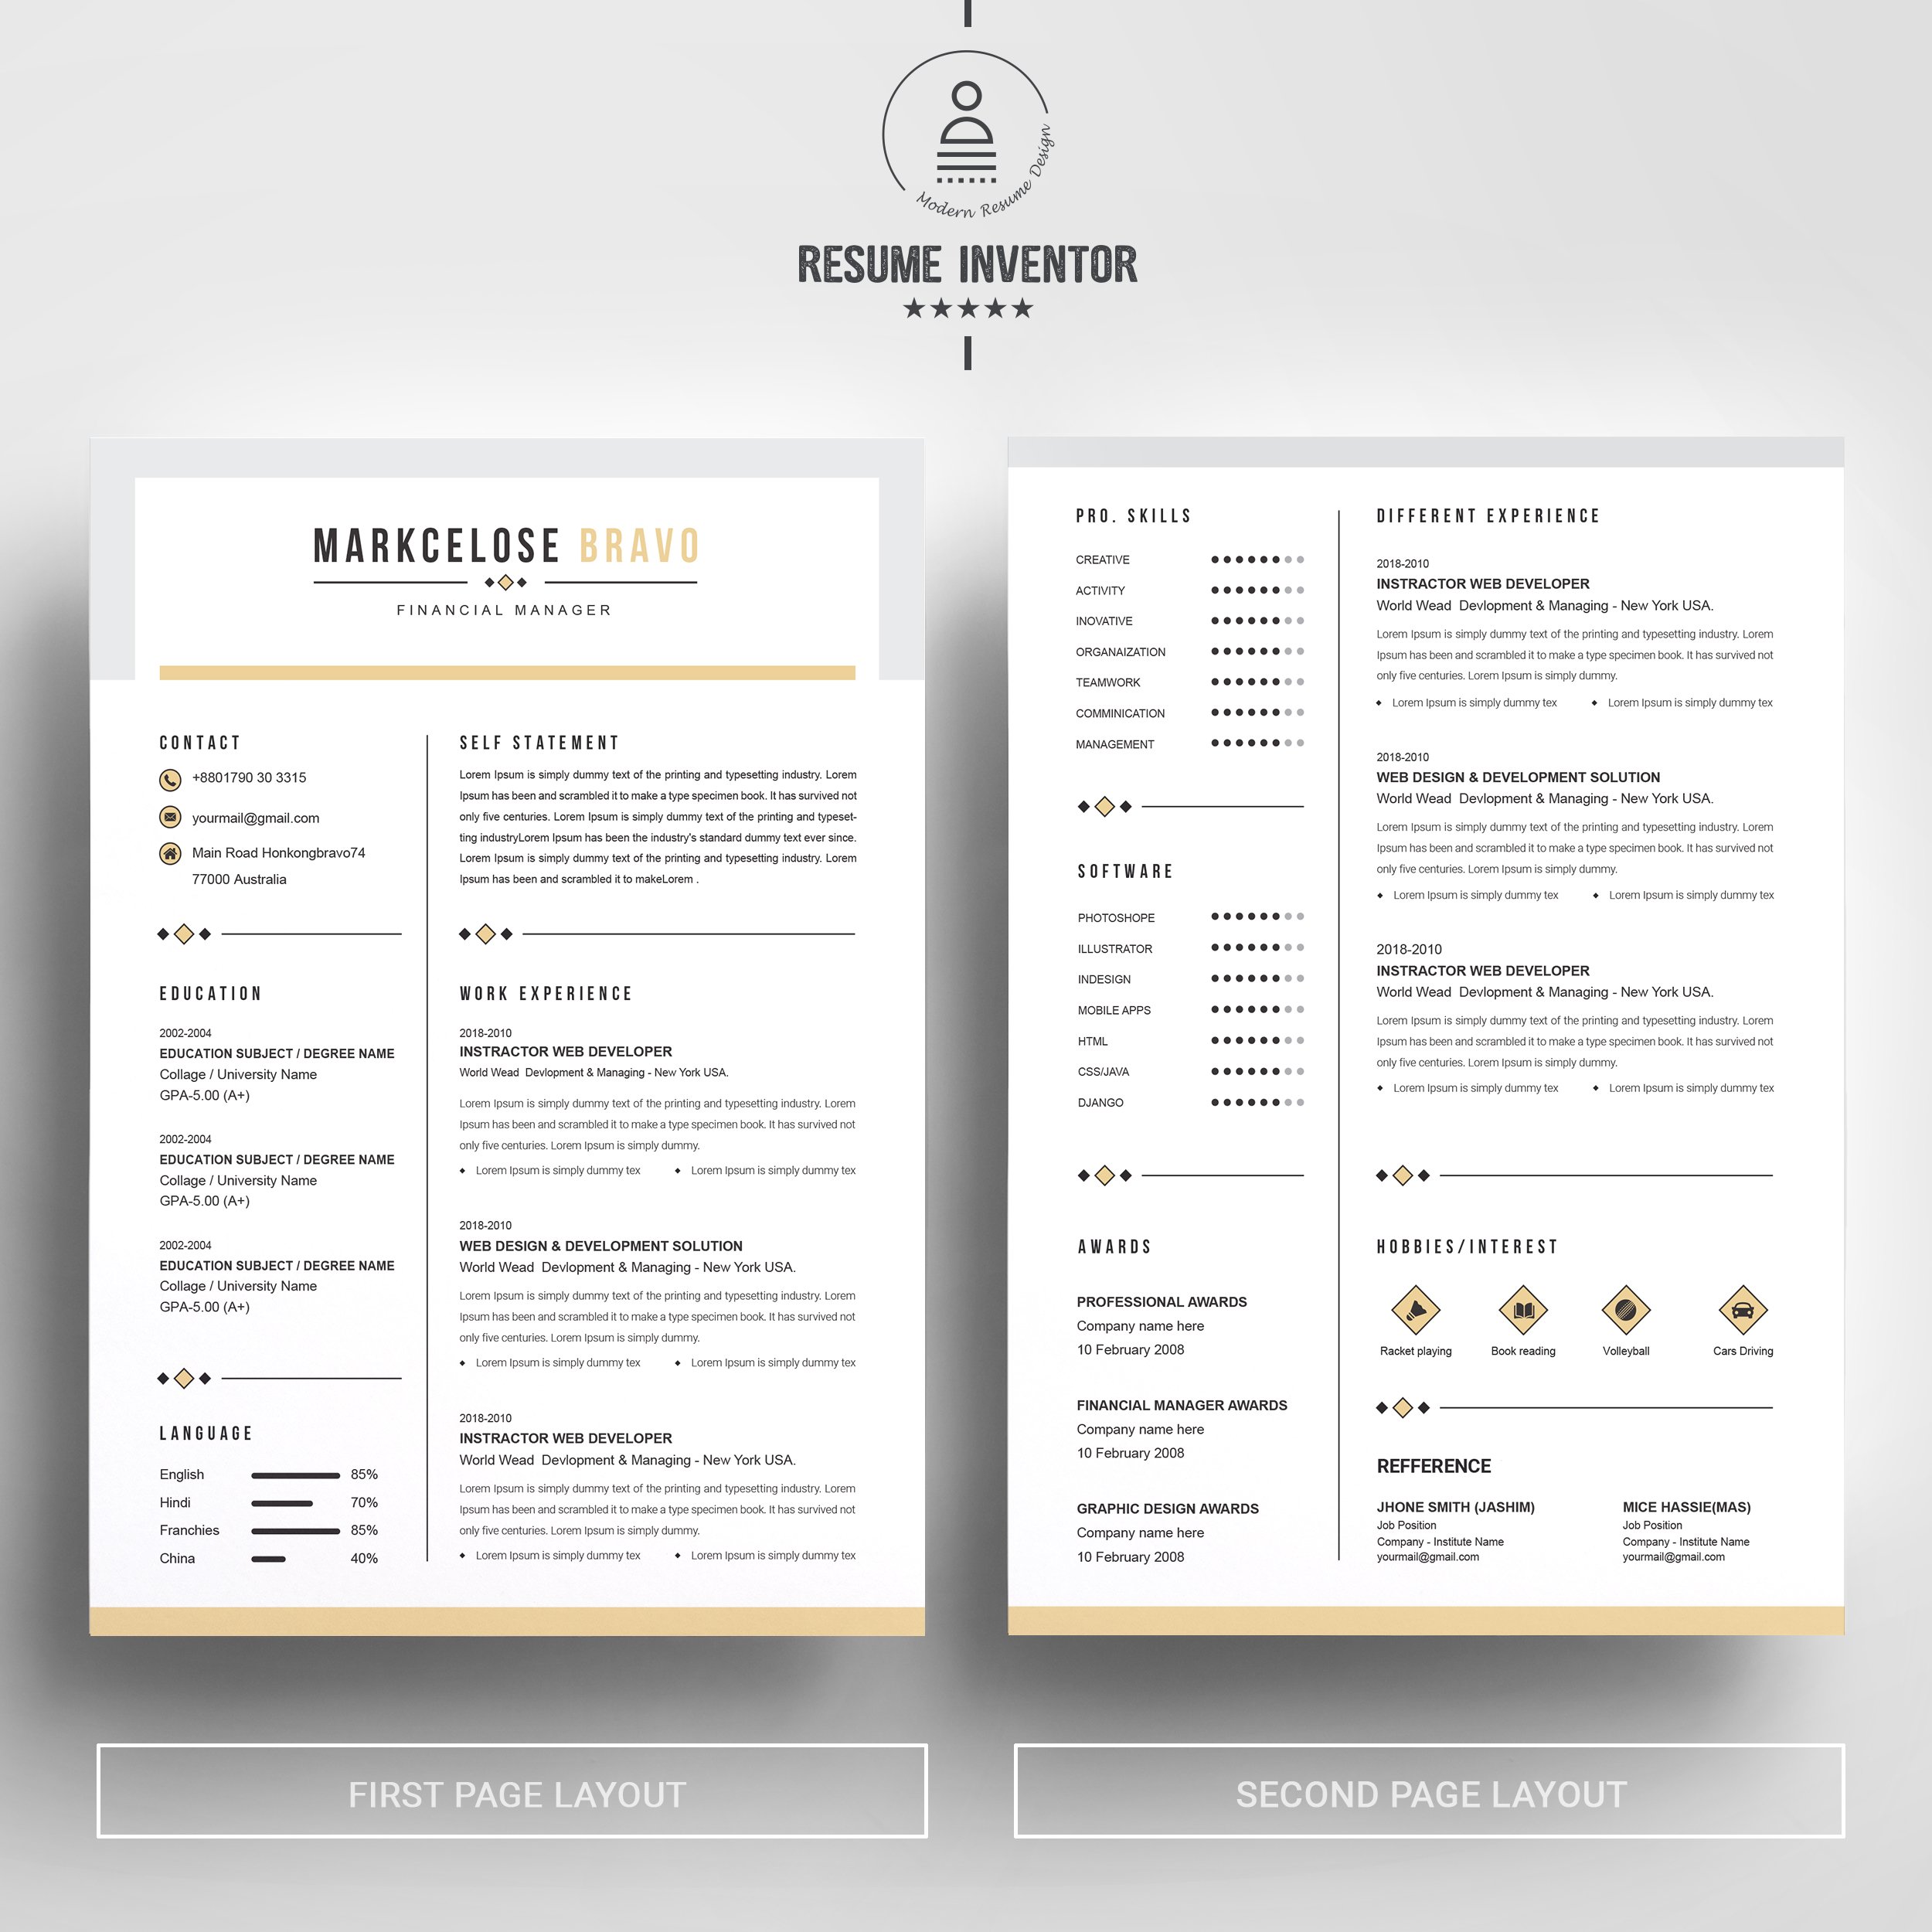 Curriculum Vita | Resume CV Design preview image.